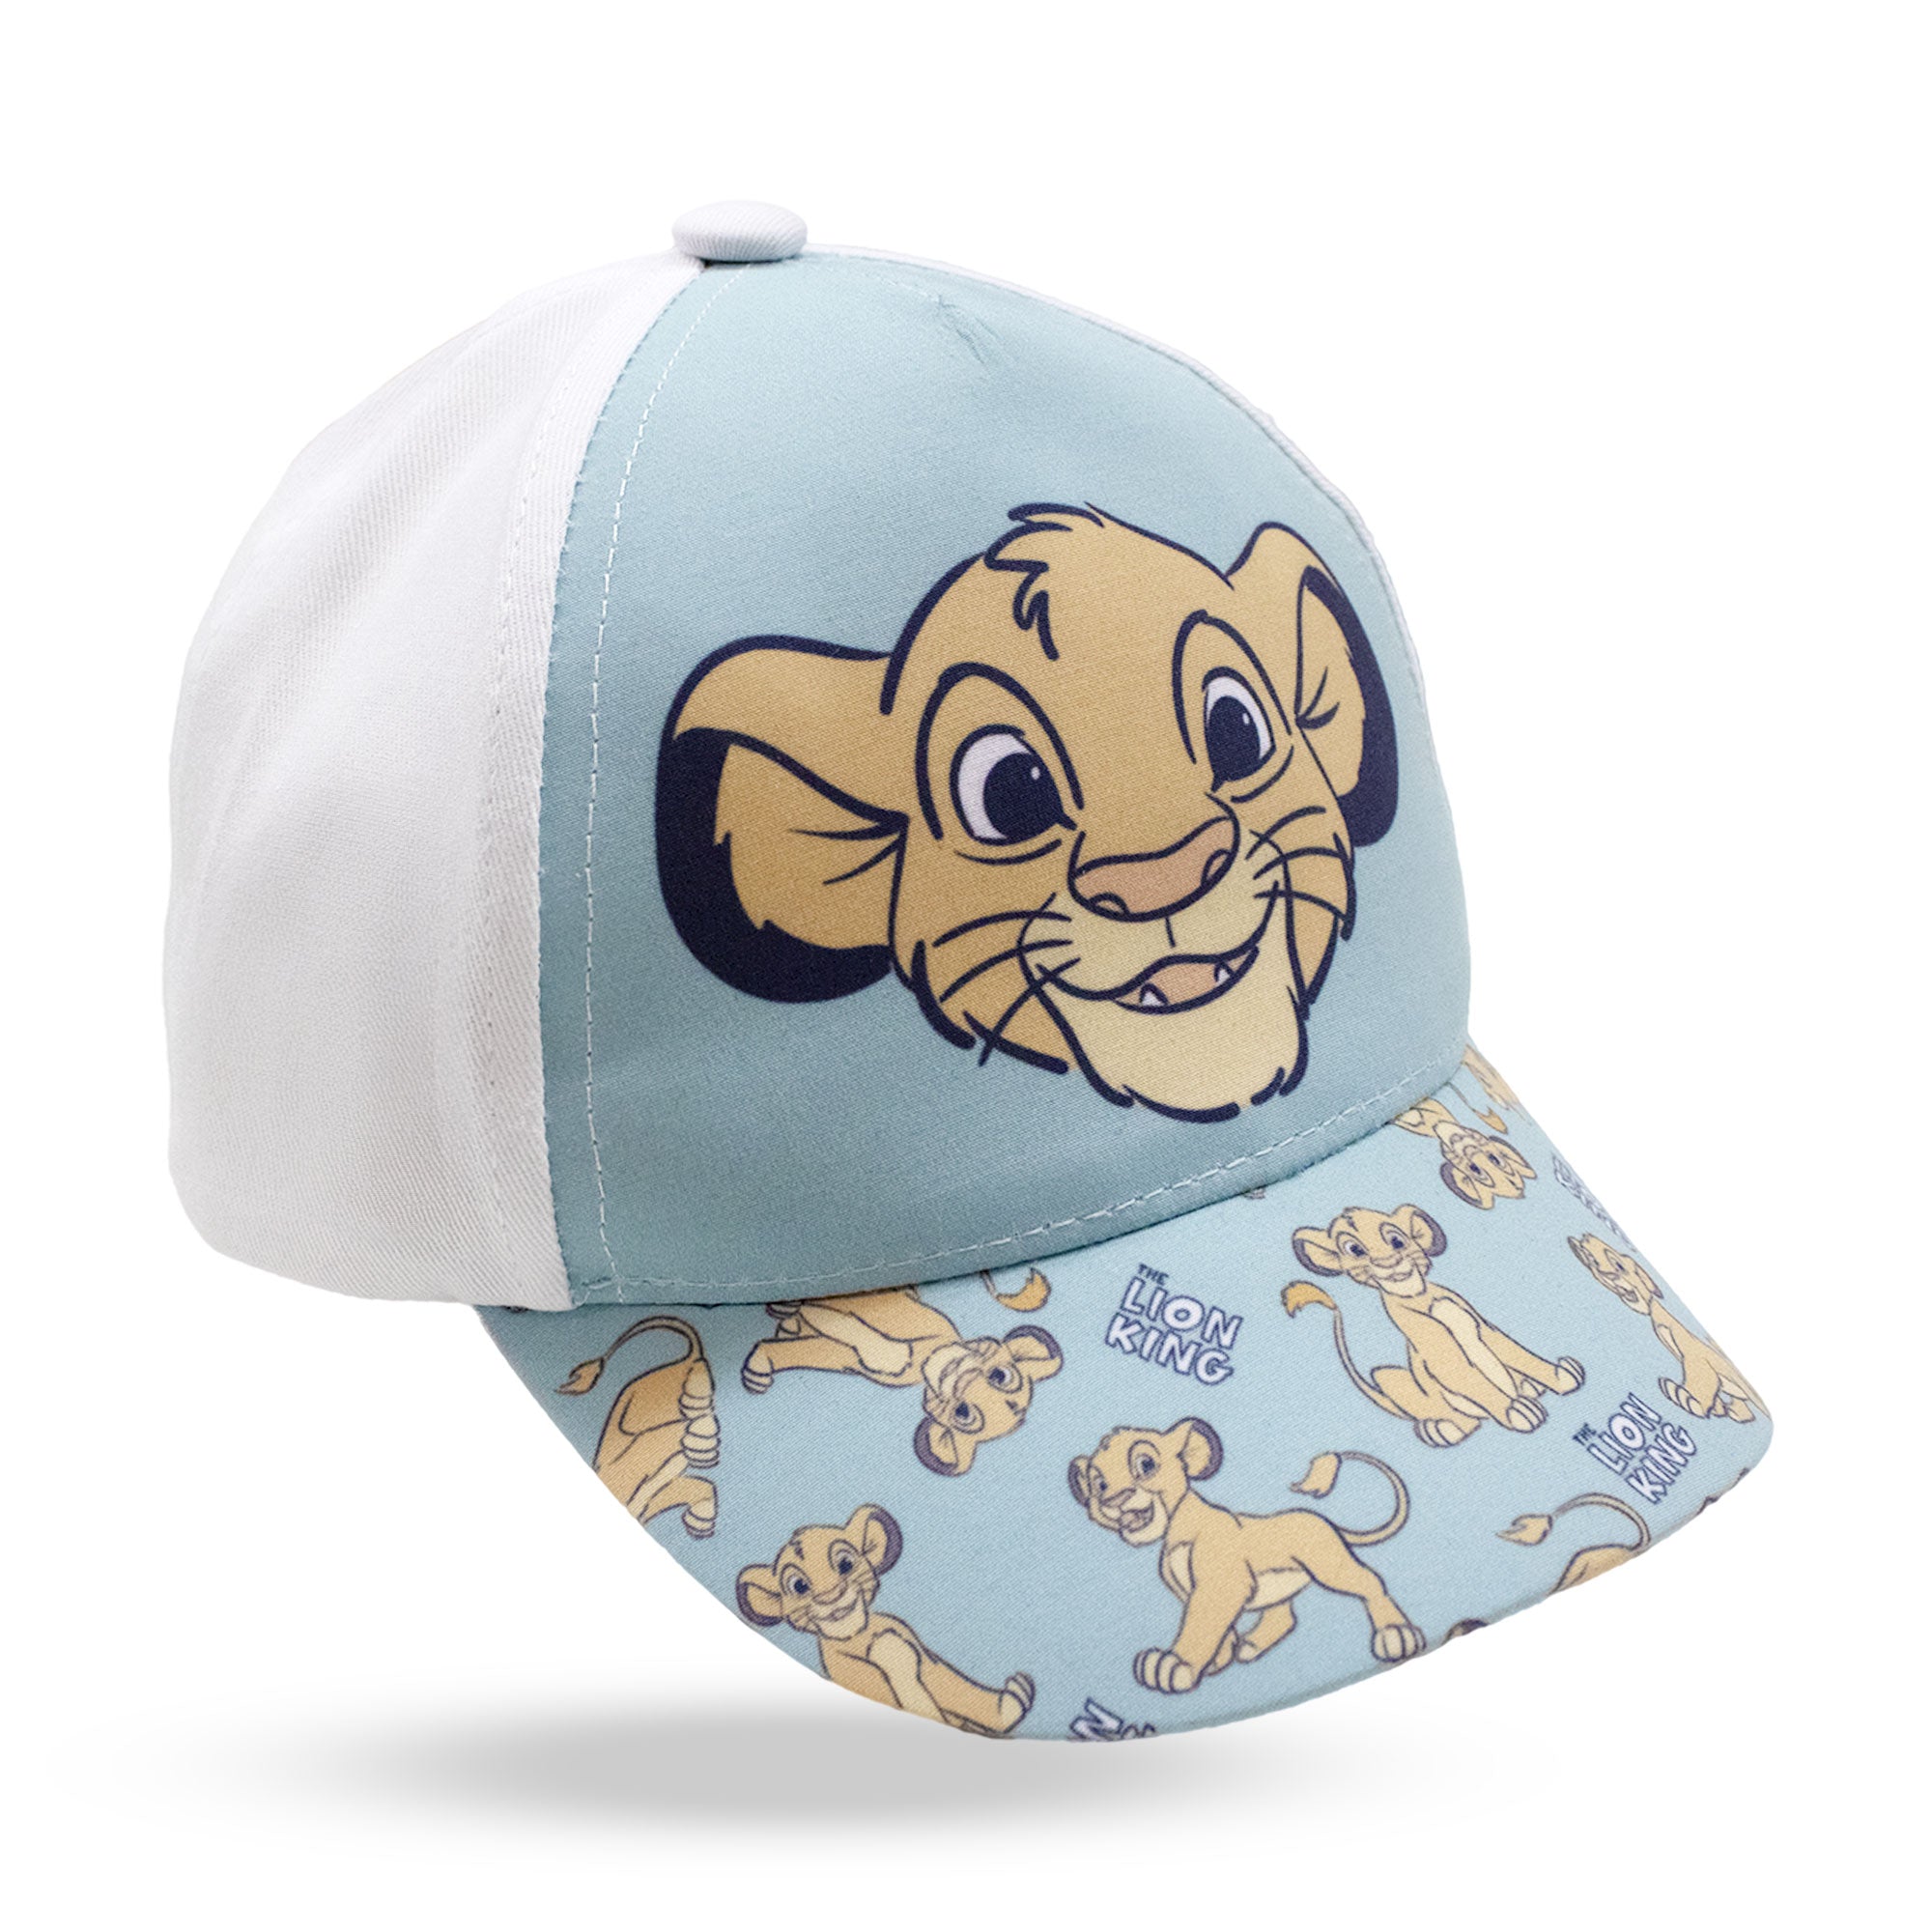 Disney The Lion King Simba visor cap for children 6739